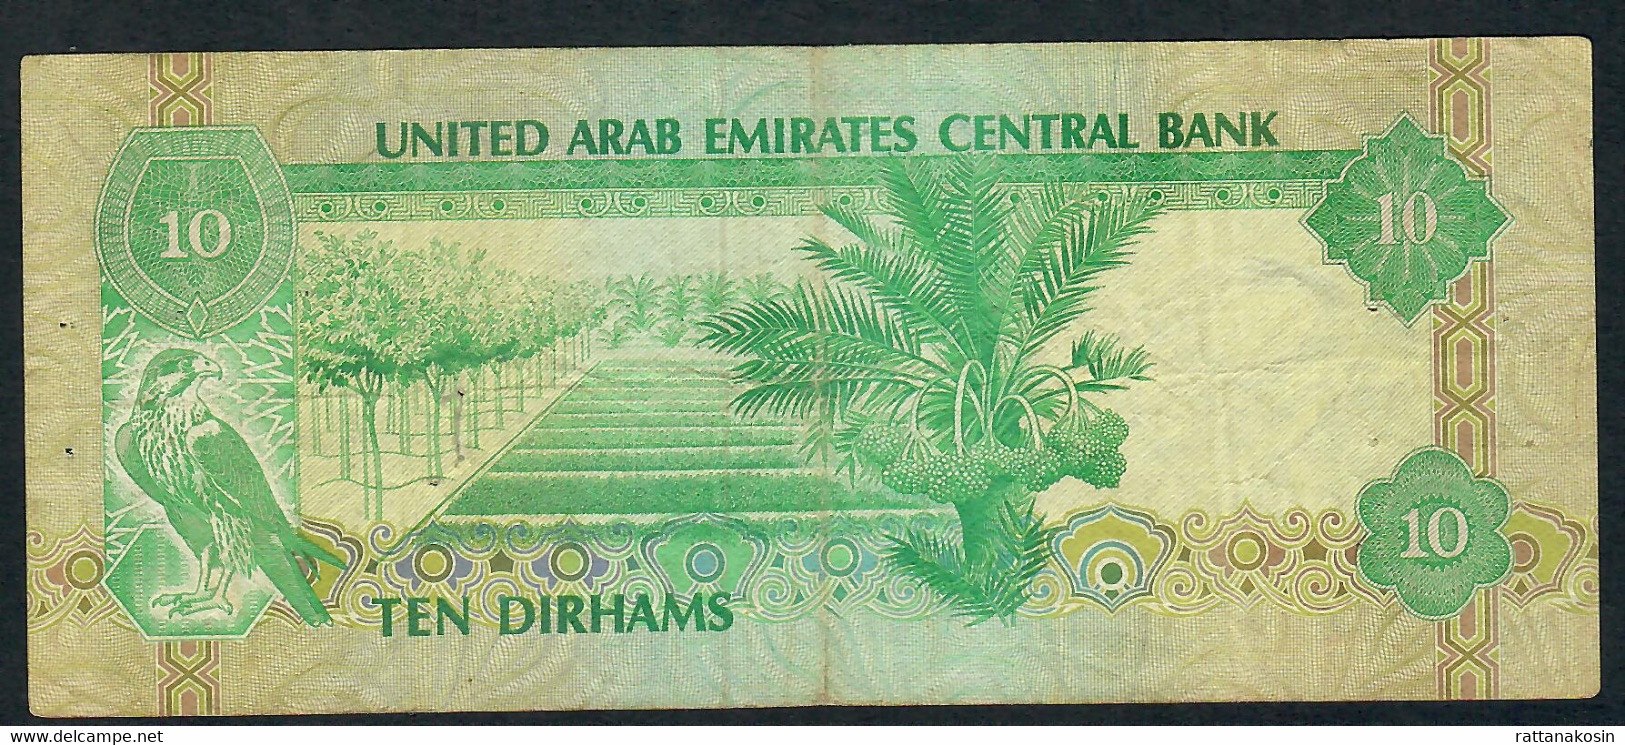 U.A.E. P8 10 DIRHAMS 1982 FINE - Emirati Arabi Uniti